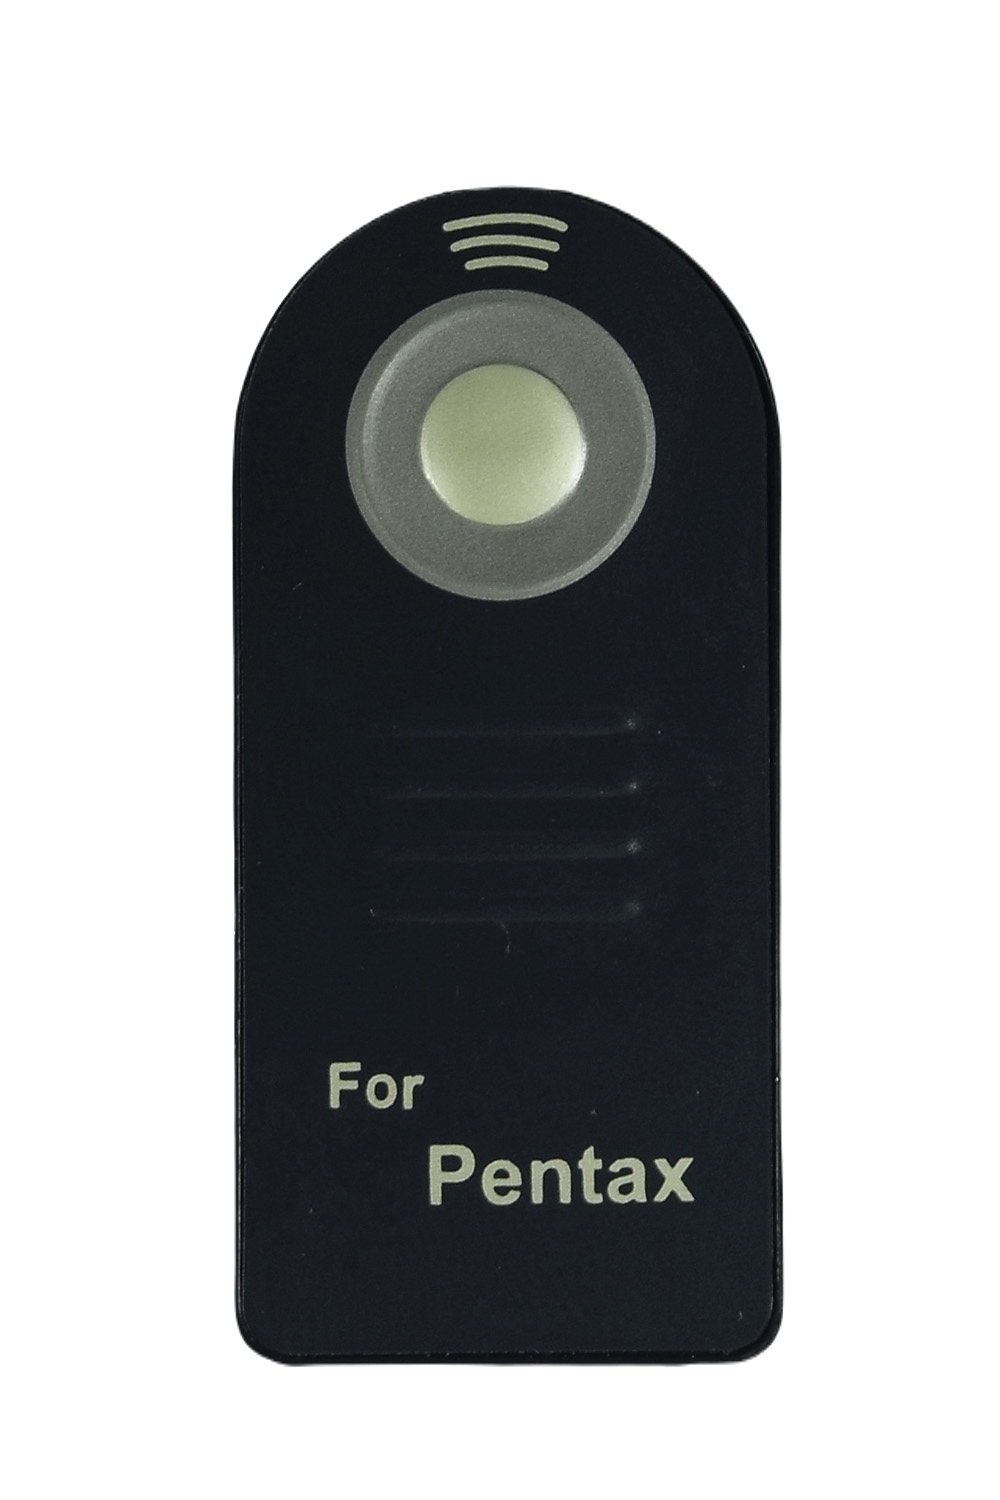 Пульт для фотоаппарата Pentax ML-P, фото